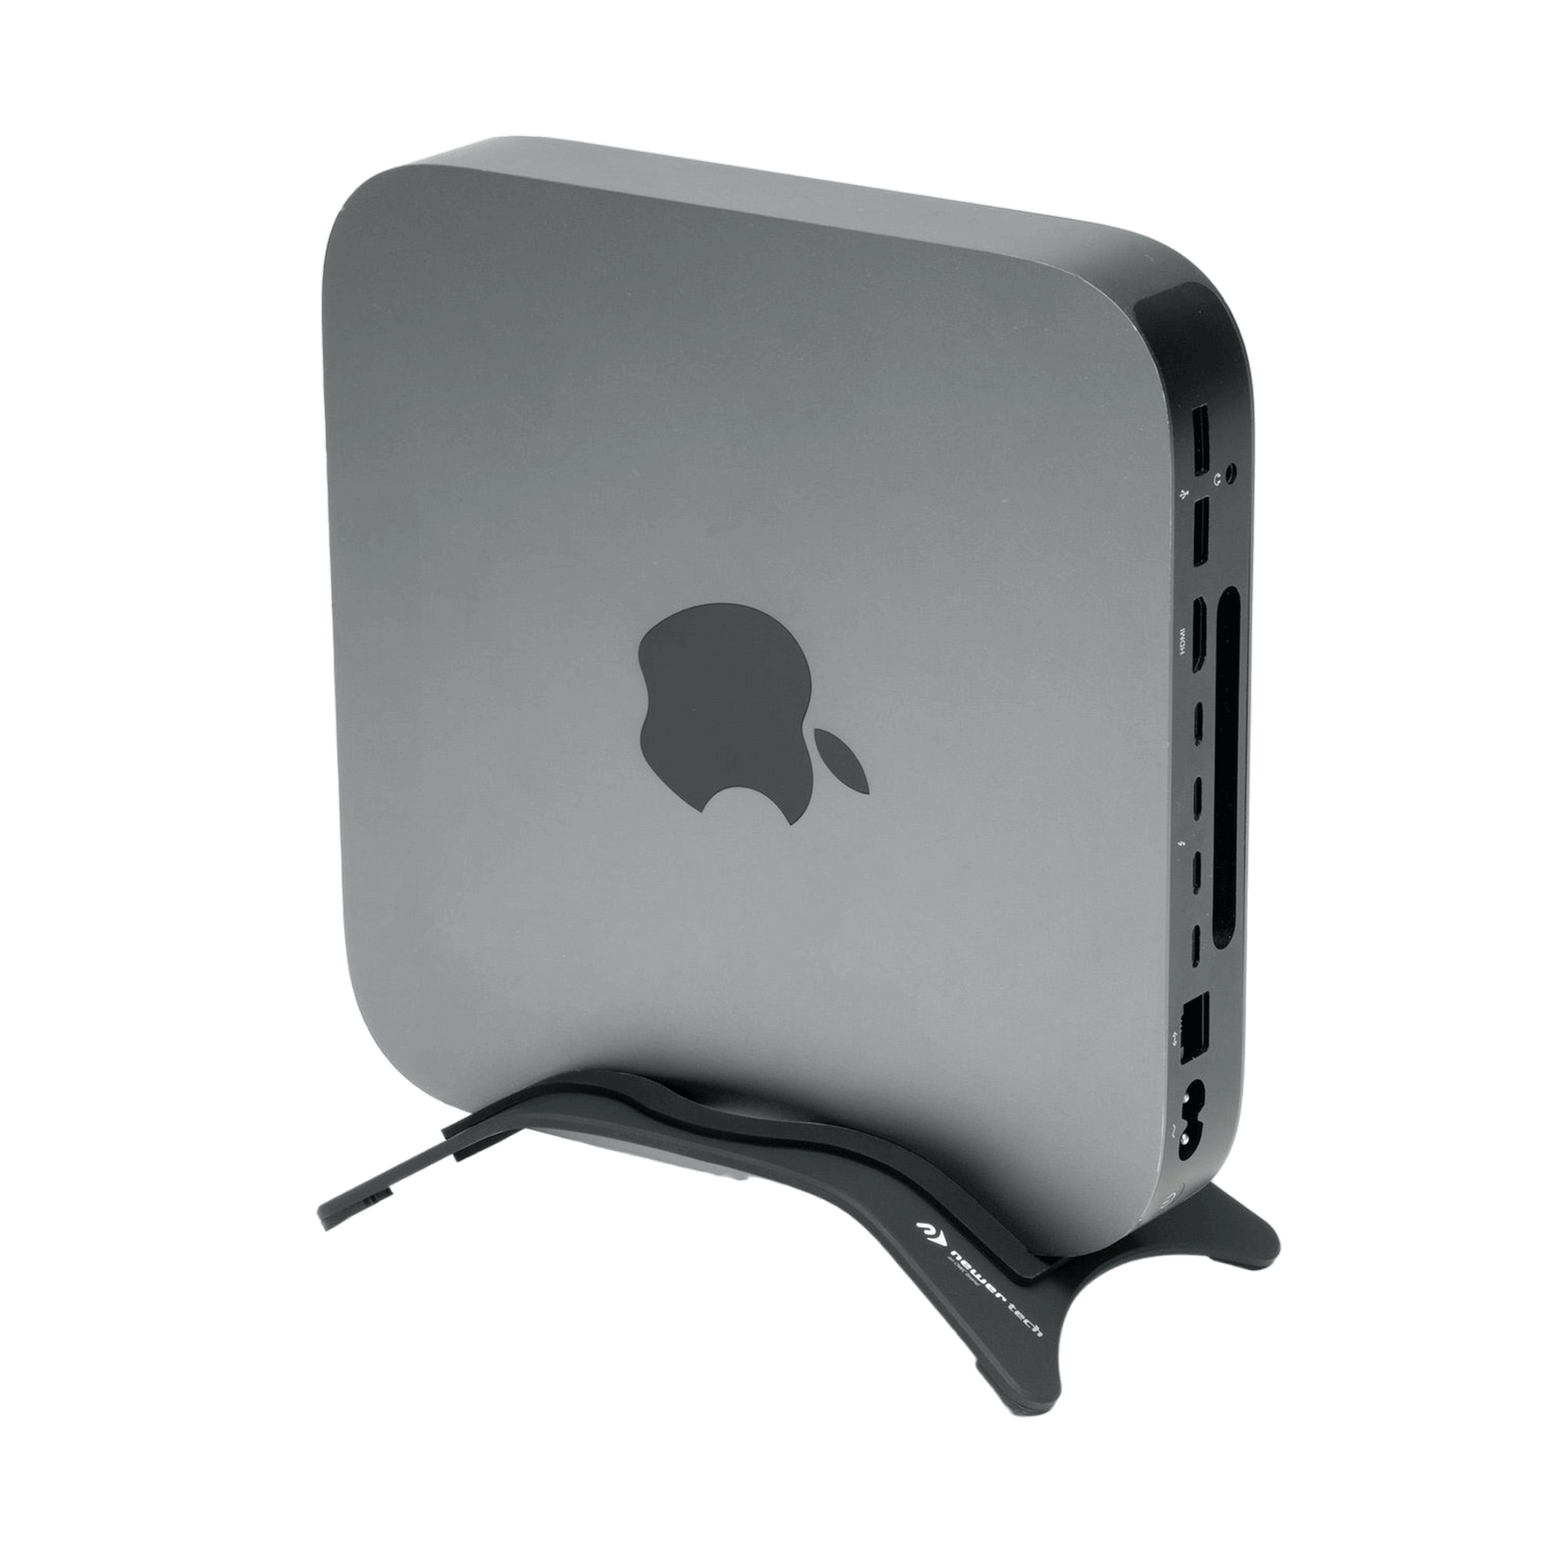 NewerTech NuStand Alloy Desktop Stand for Mac mini